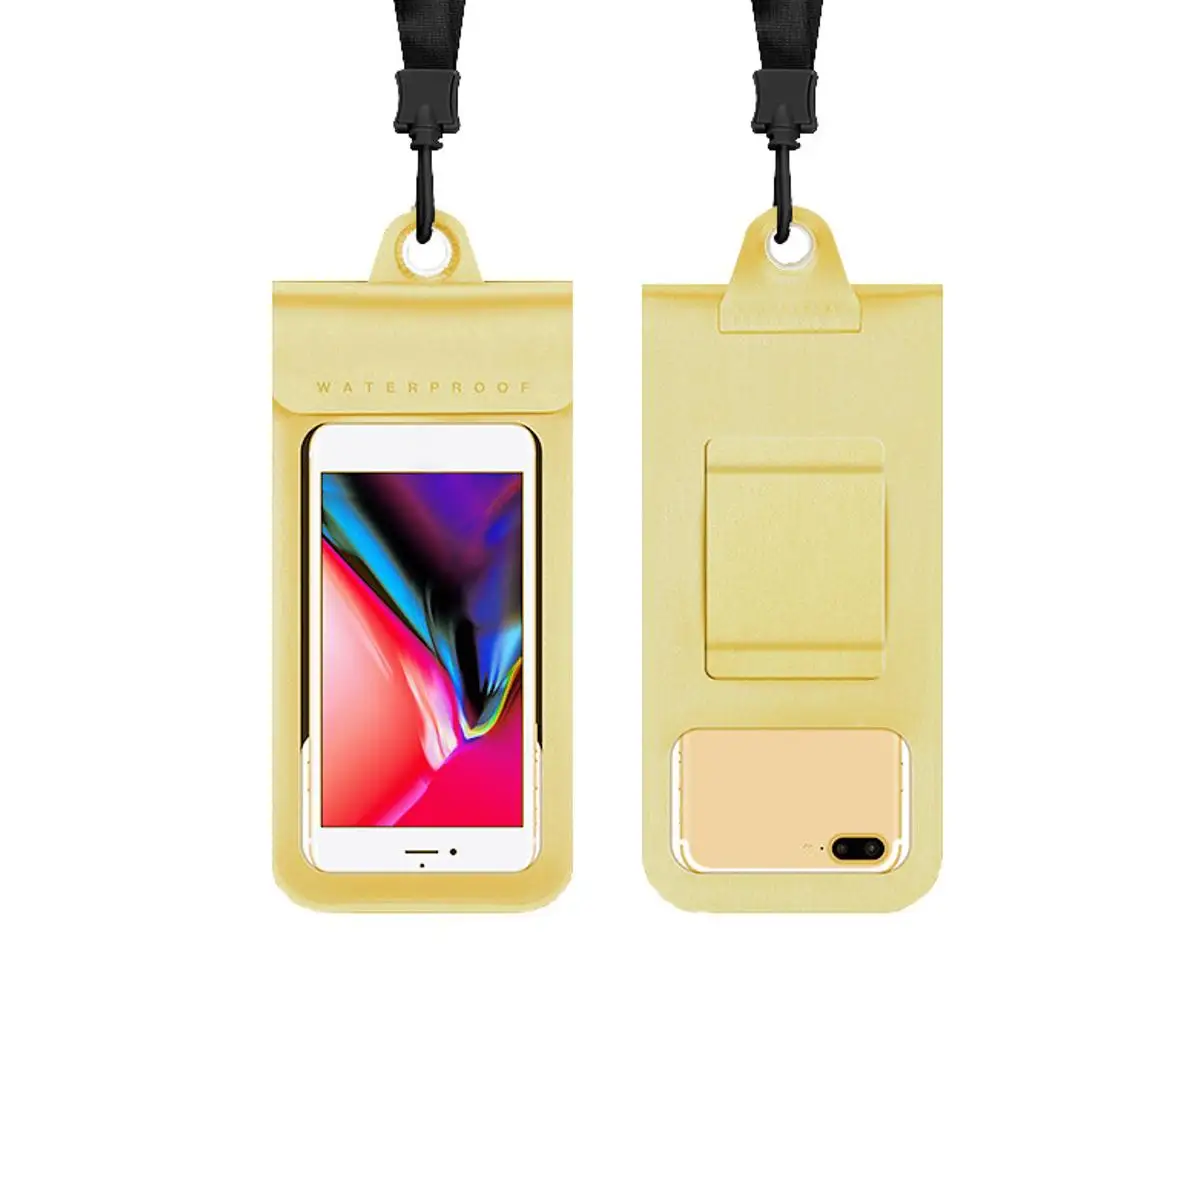 ПВХ Водонепроницаемый универсальный чехол для телефона анти-вода Чехол для плавания сухой Сумка Чехол - Цвет: Gold